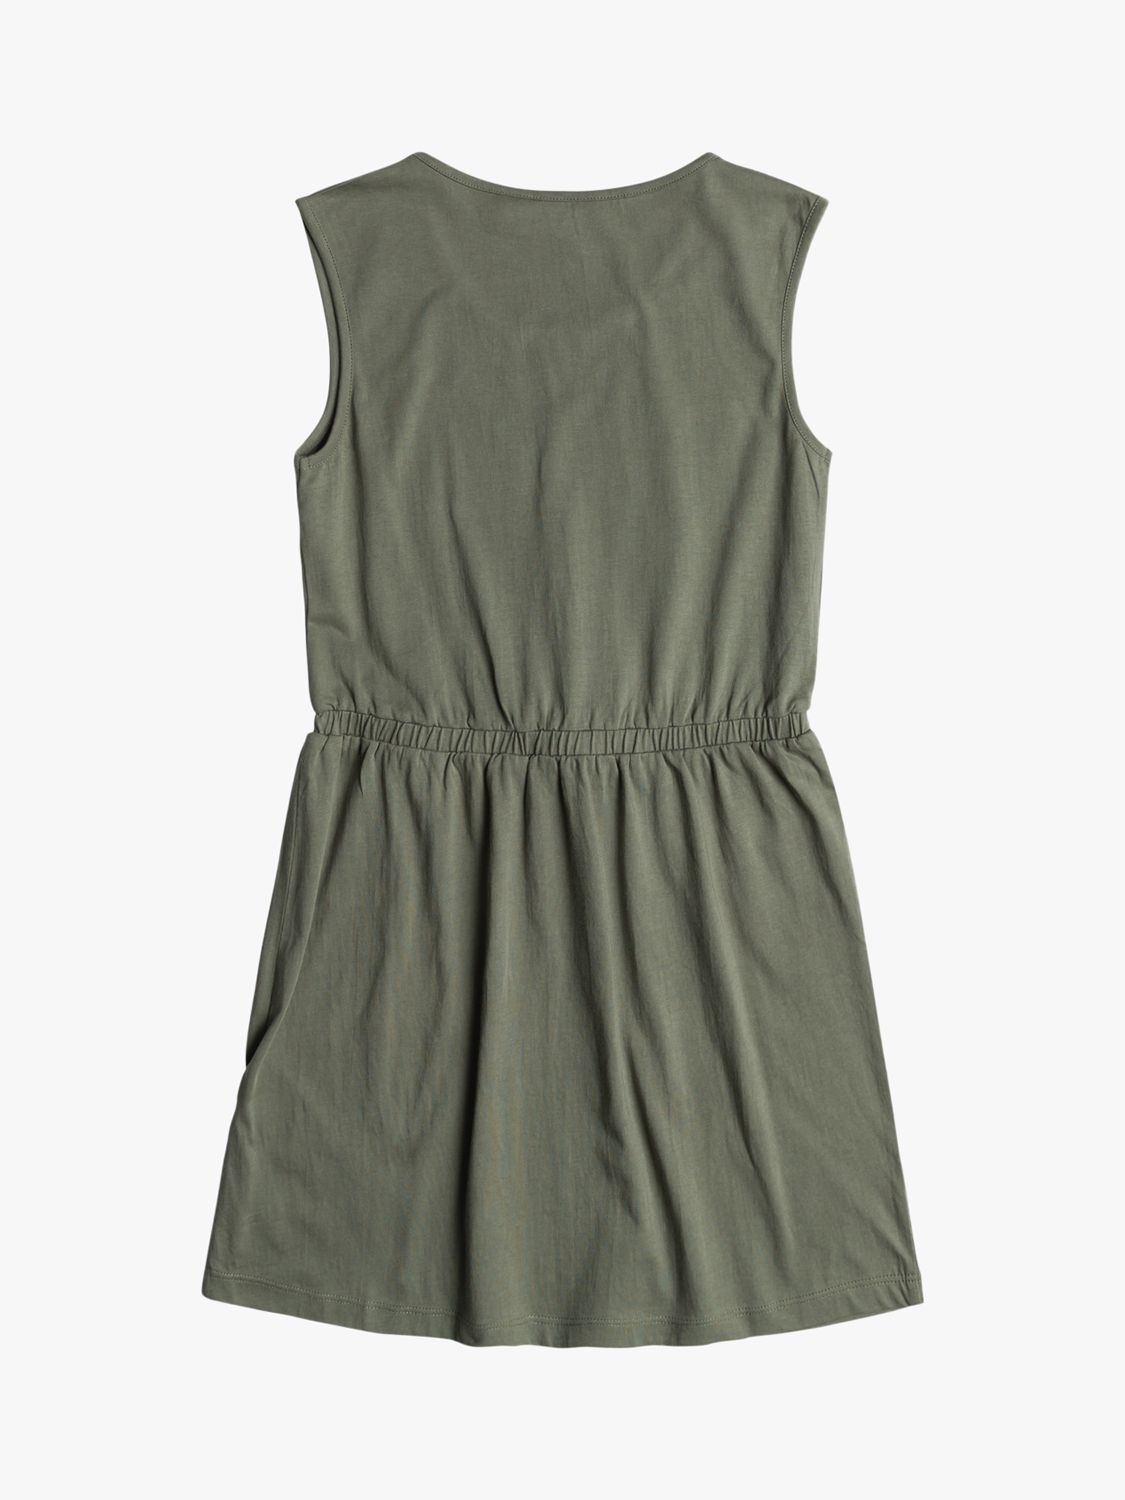 Buy Roxy Kids' Surfs Up Solid Vest Top Dress, Agave Green Online at johnlewis.com